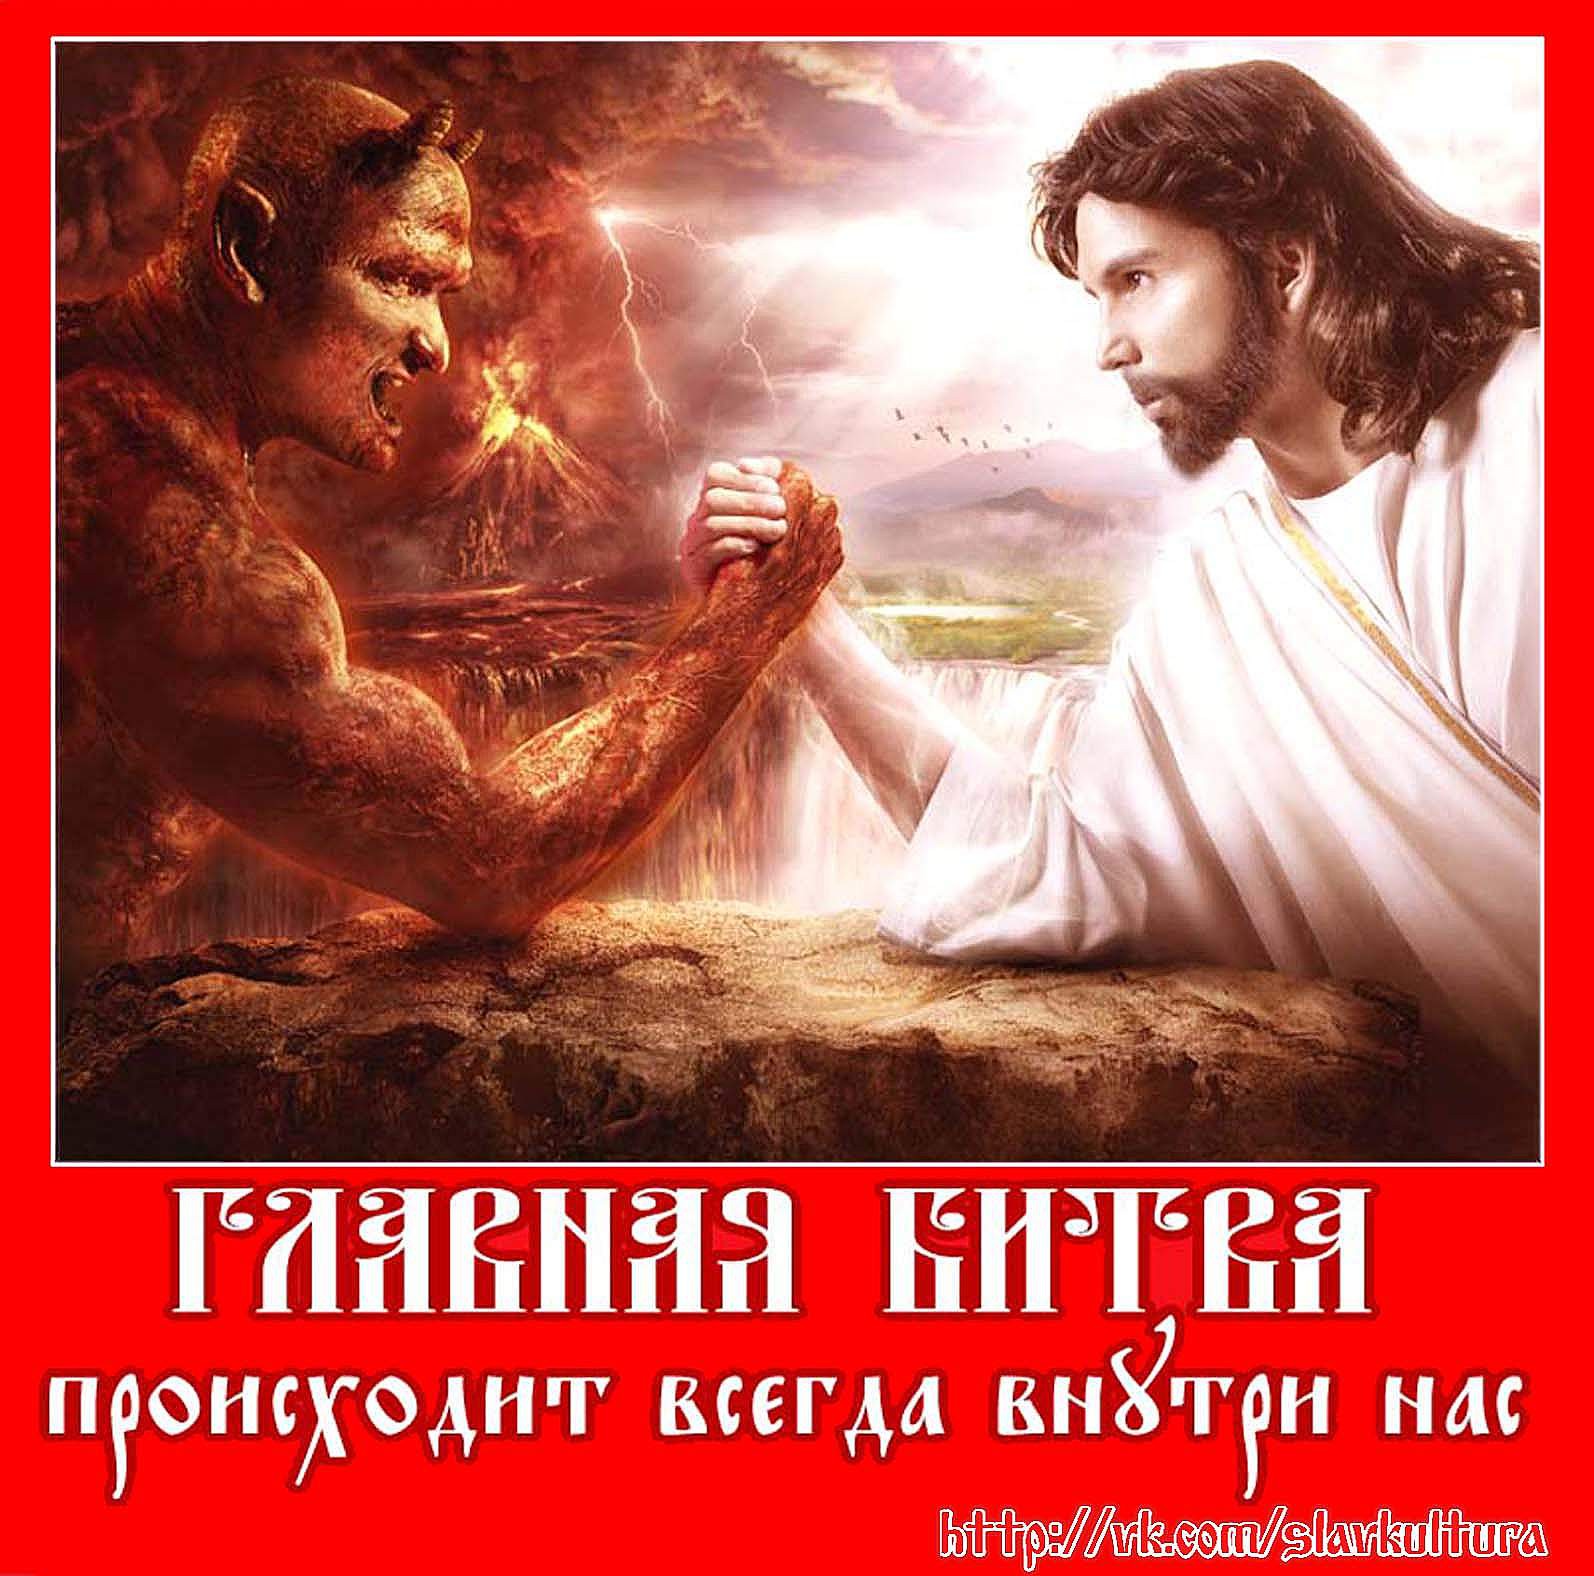 Люди стали богами. Иисус против дьявола. Бог был всегда и есть всегда. Бог и есть дьявол.